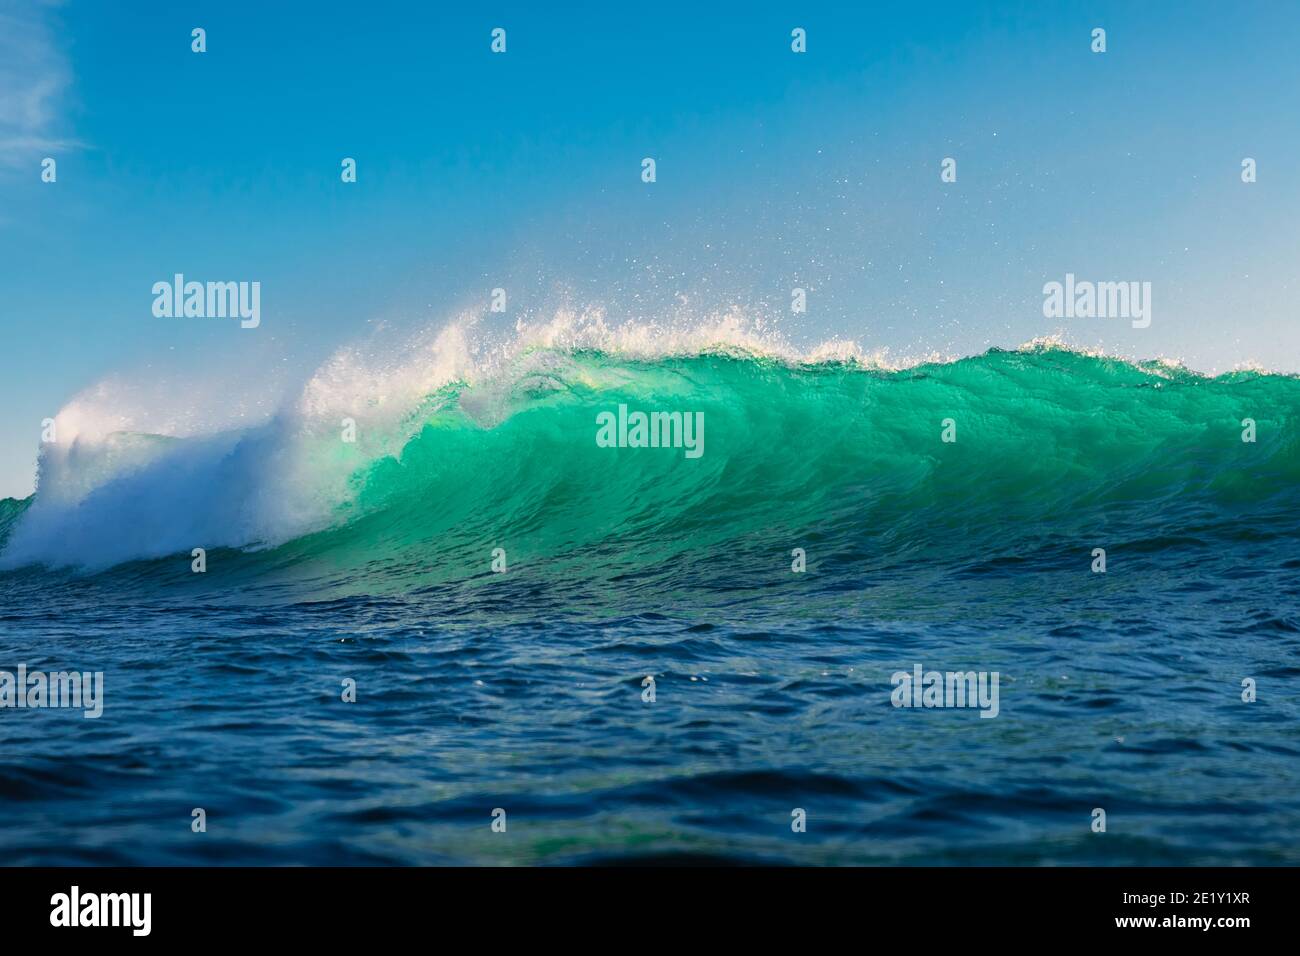 Vagues de surf dans l'océan. Brise de vagues turquoise jour ensoleillé Banque D'Images